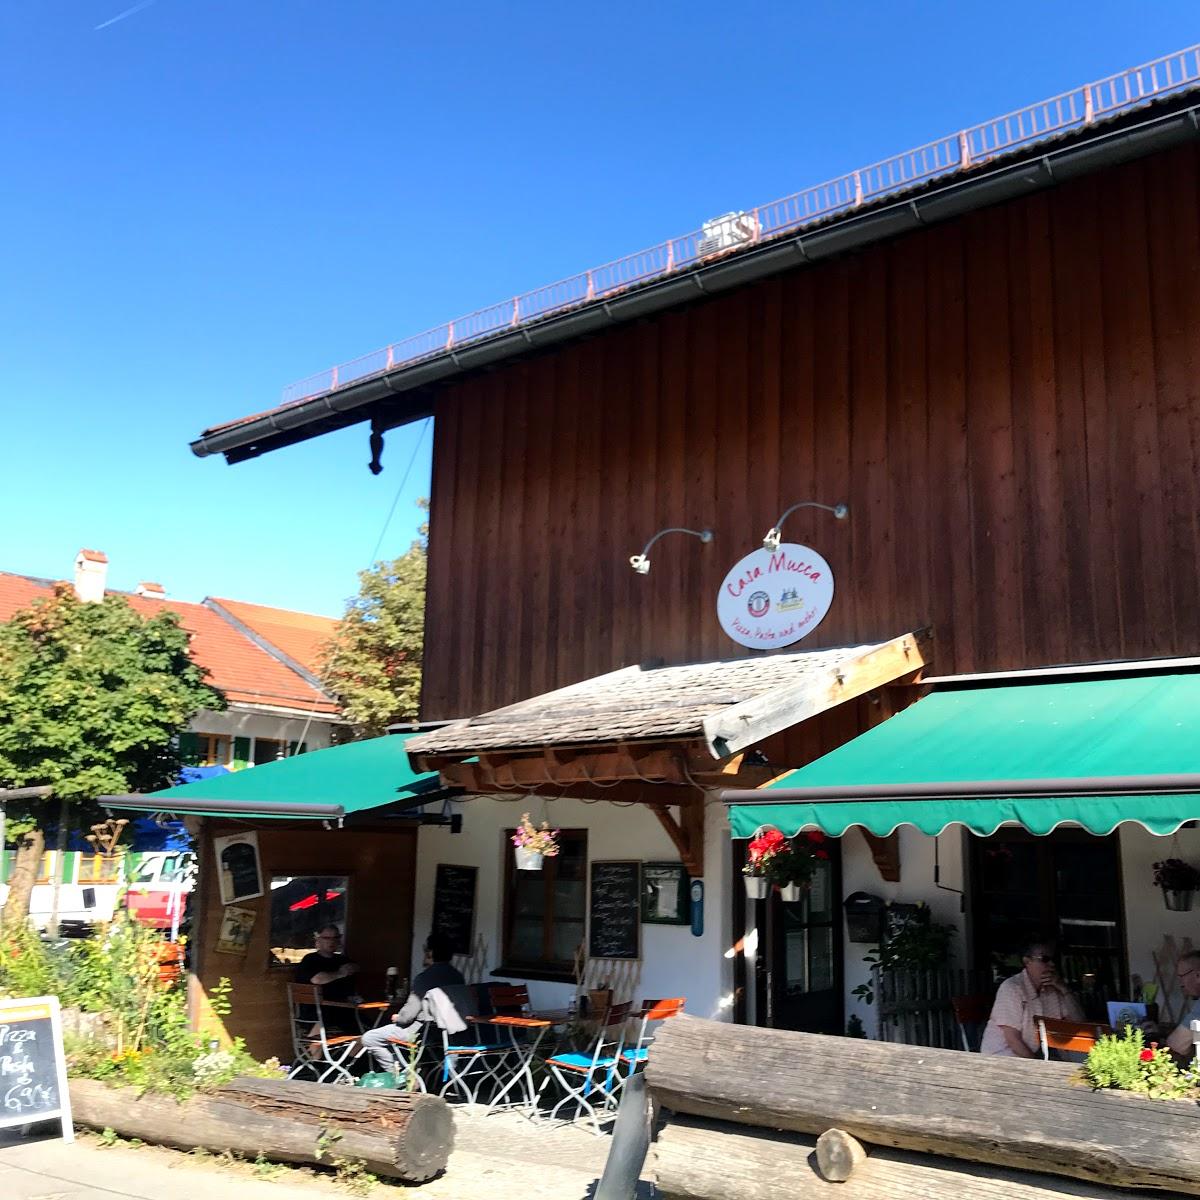 Restaurant "Casa Mucca" in  Krün